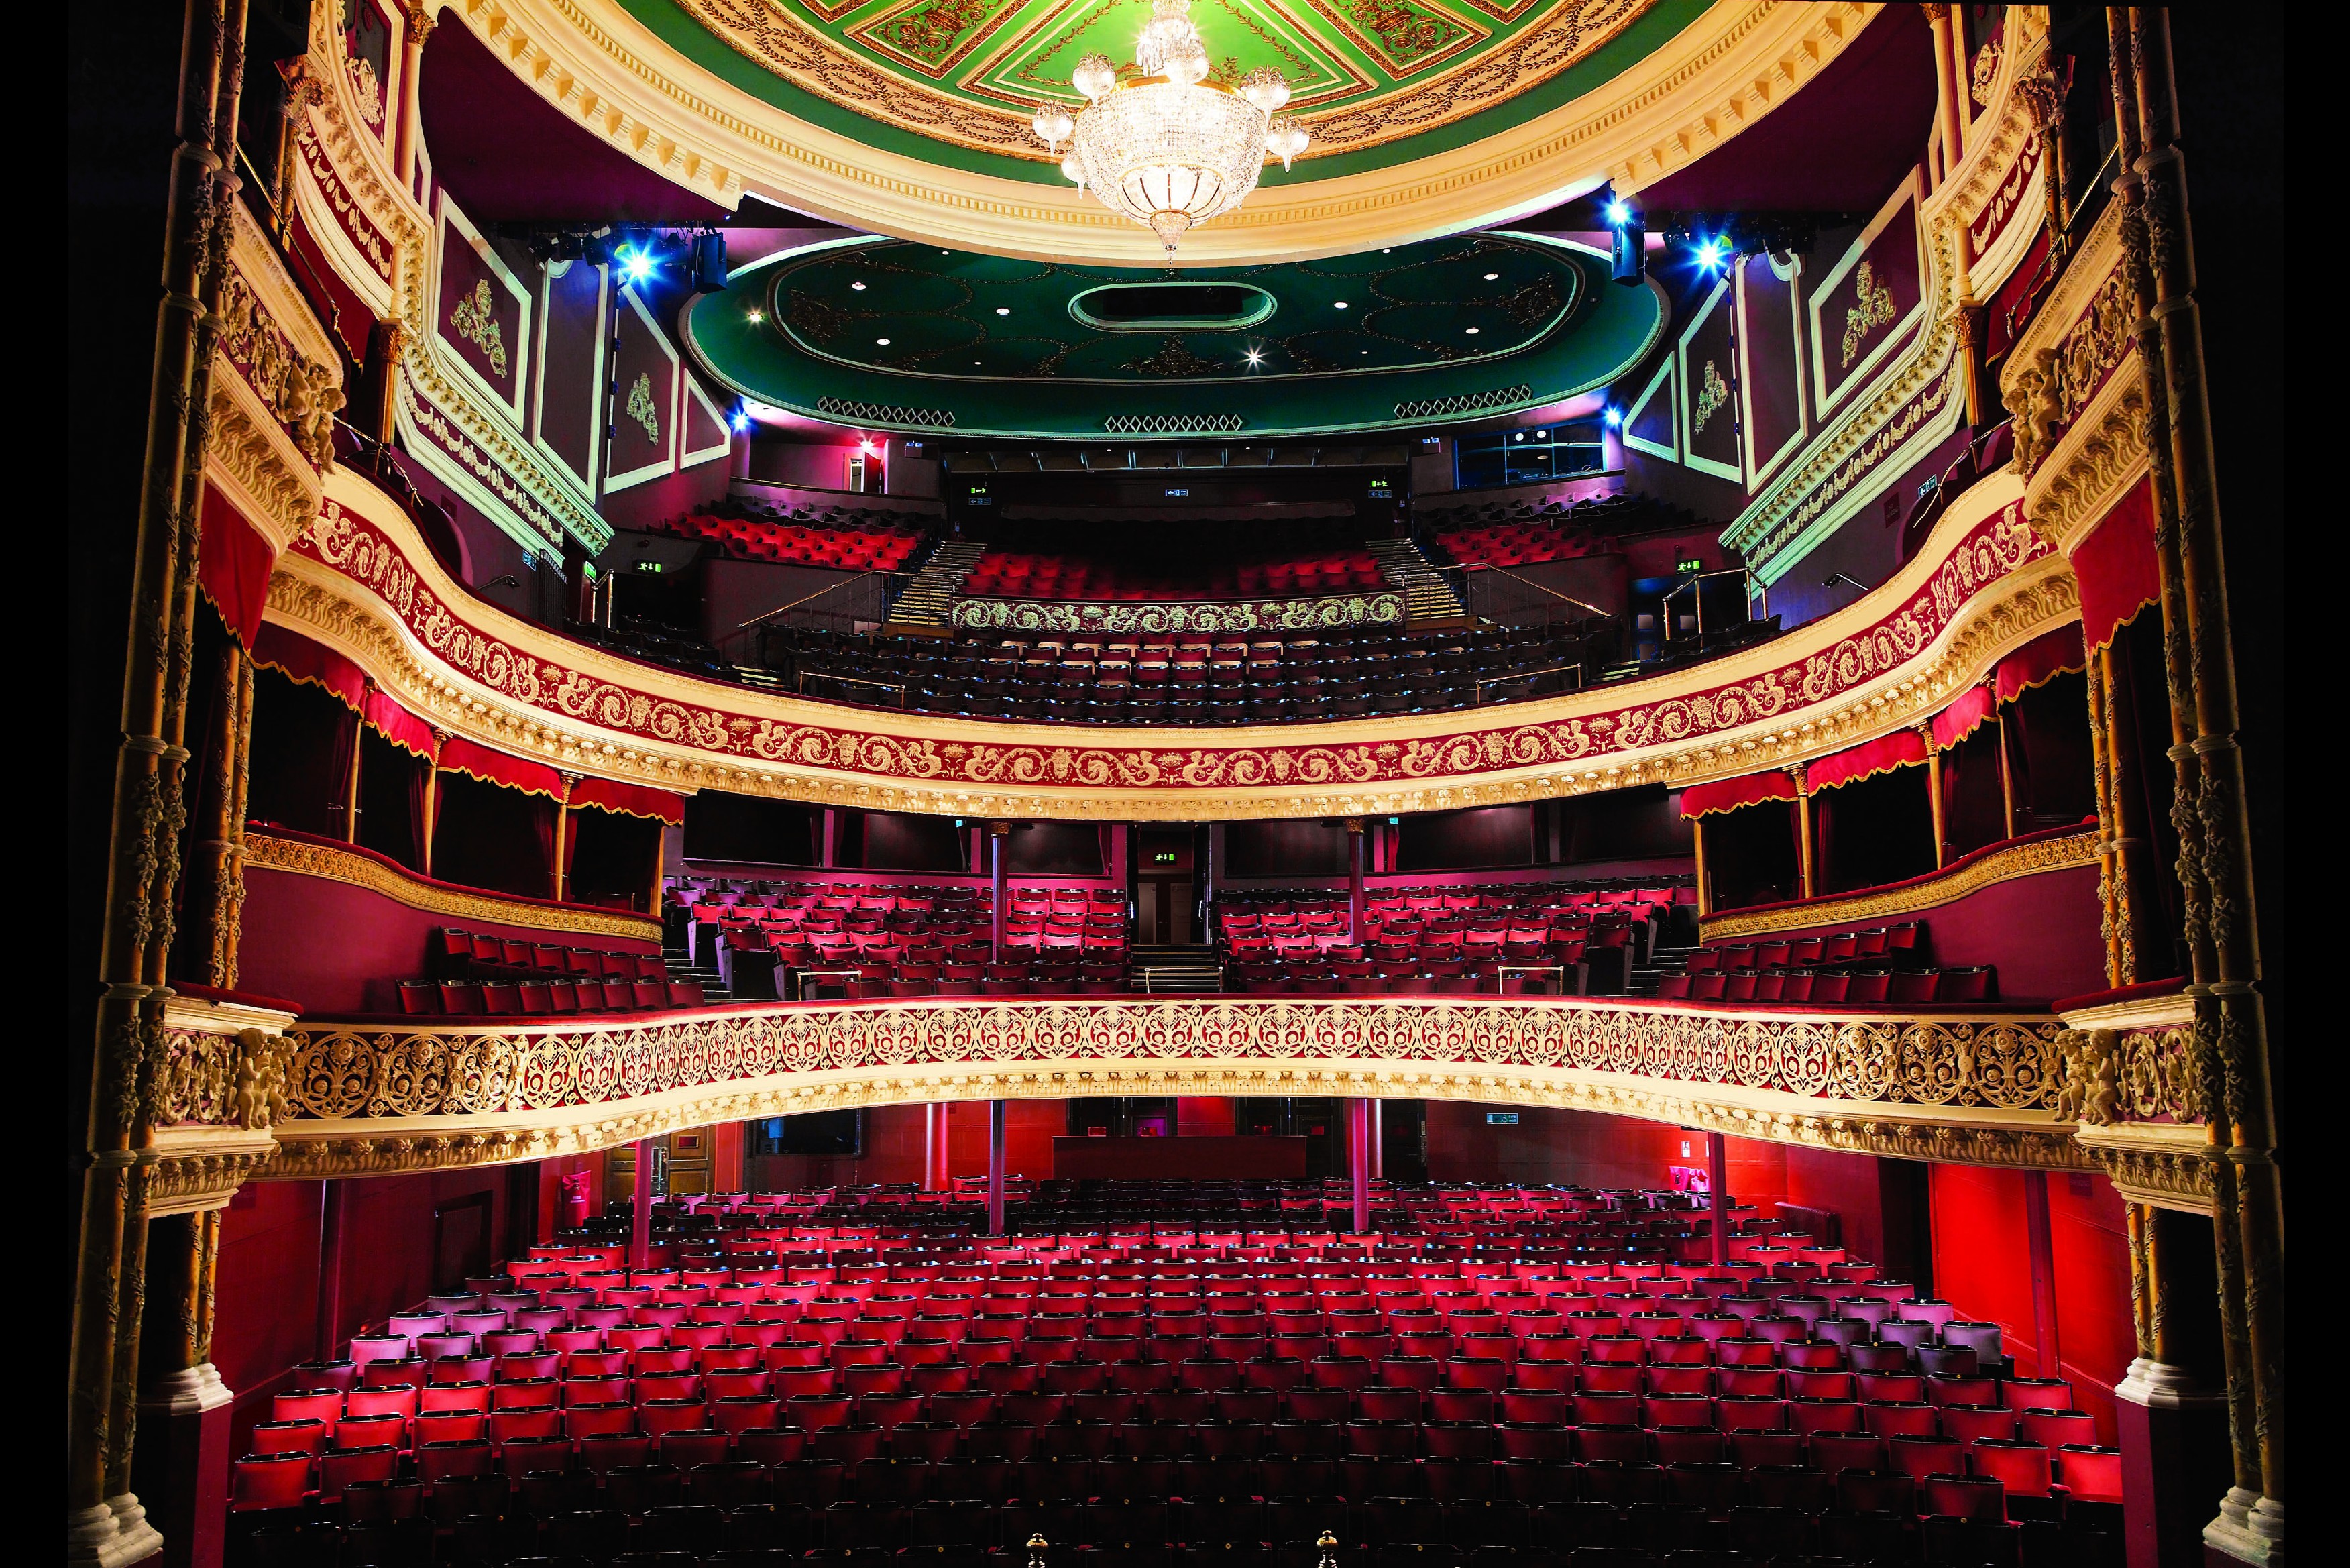 Theatre in use. GAIETY Theatre. GAIETY Theatre, Dublin. Dress circle в театре. Ирландский театр изнутри.